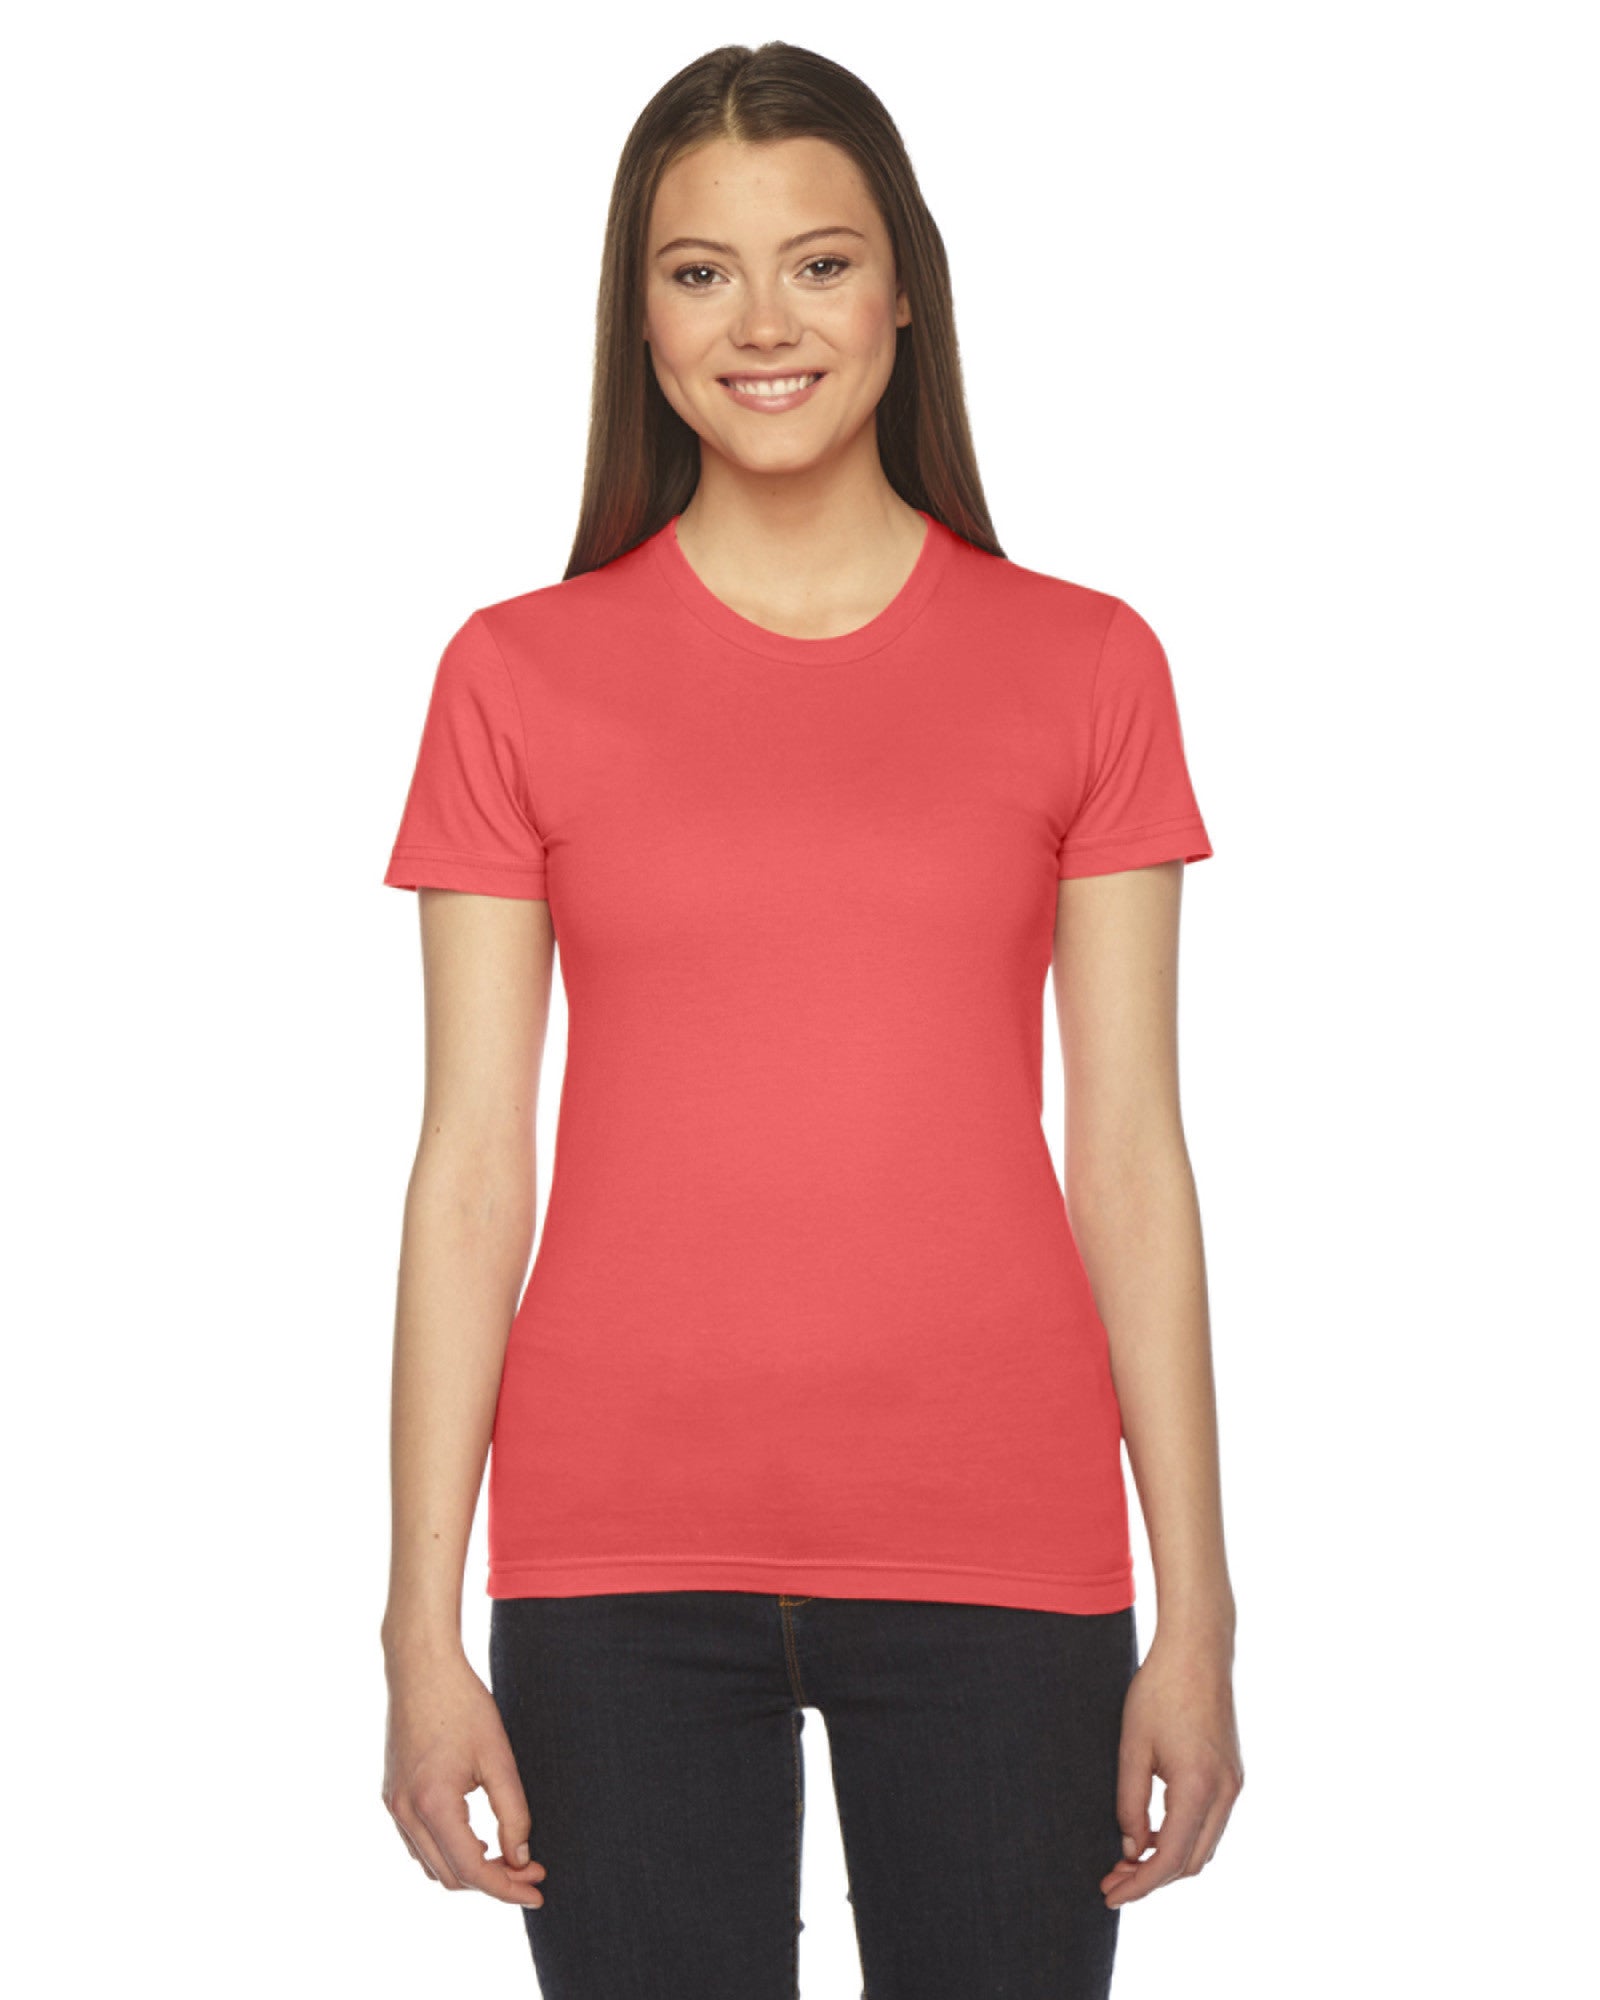 Nene Crossing Women's American Apparel Fine Jersey Short Sleeve T-Shirt